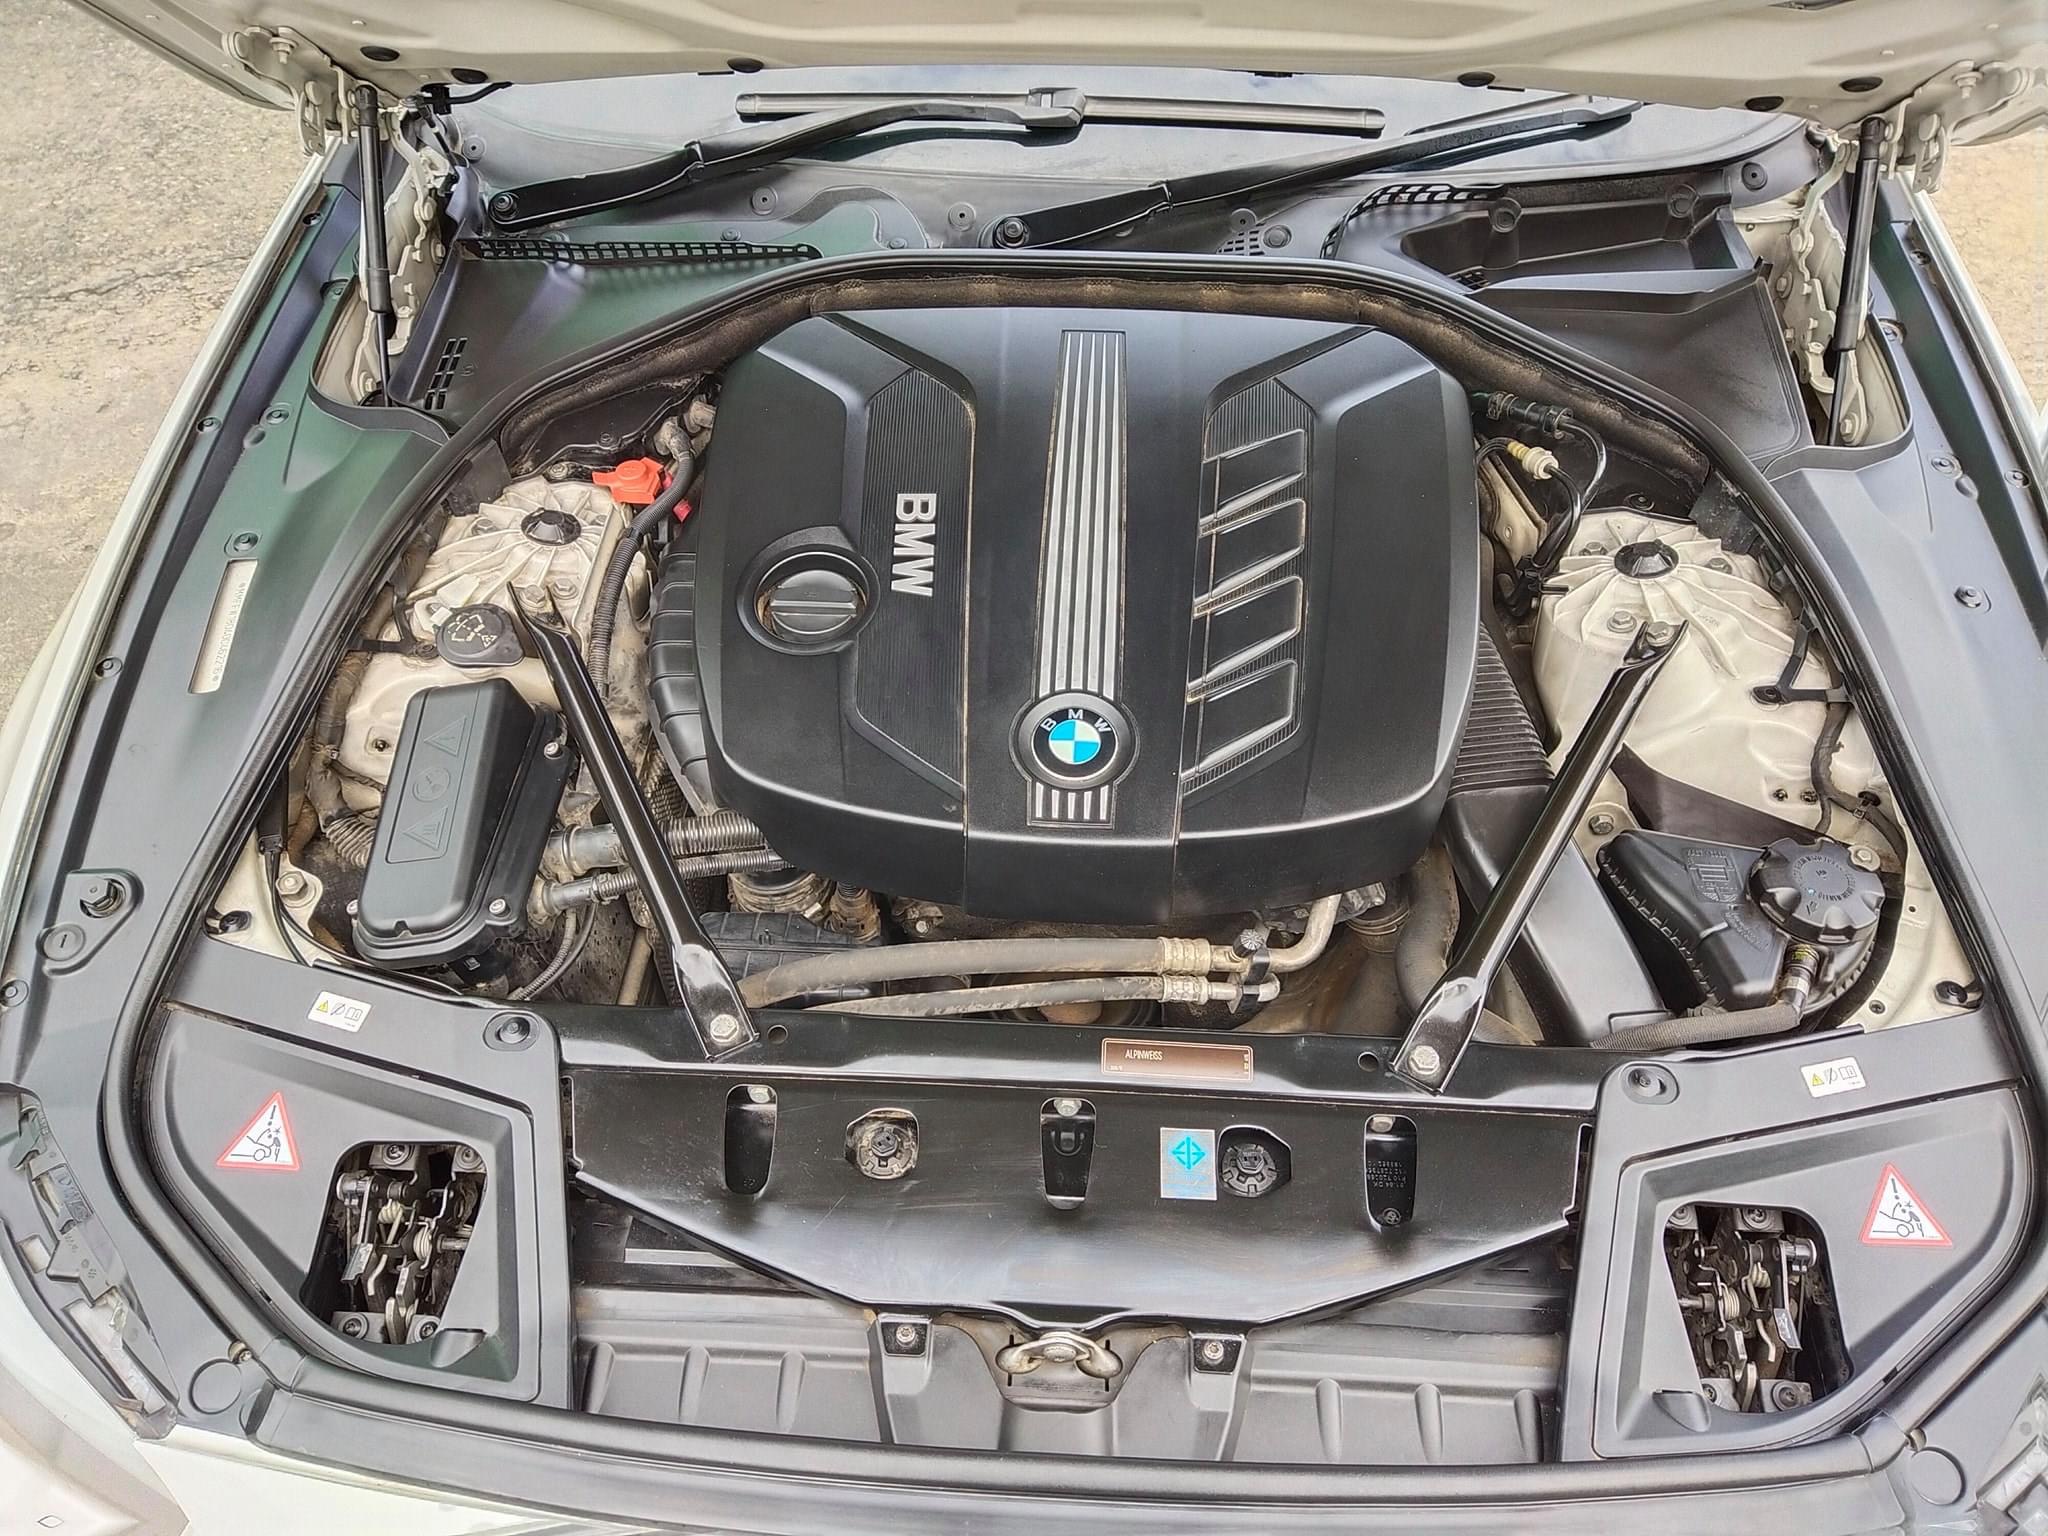 ขาย BMW 520D จดทะเบียน ปี 2014